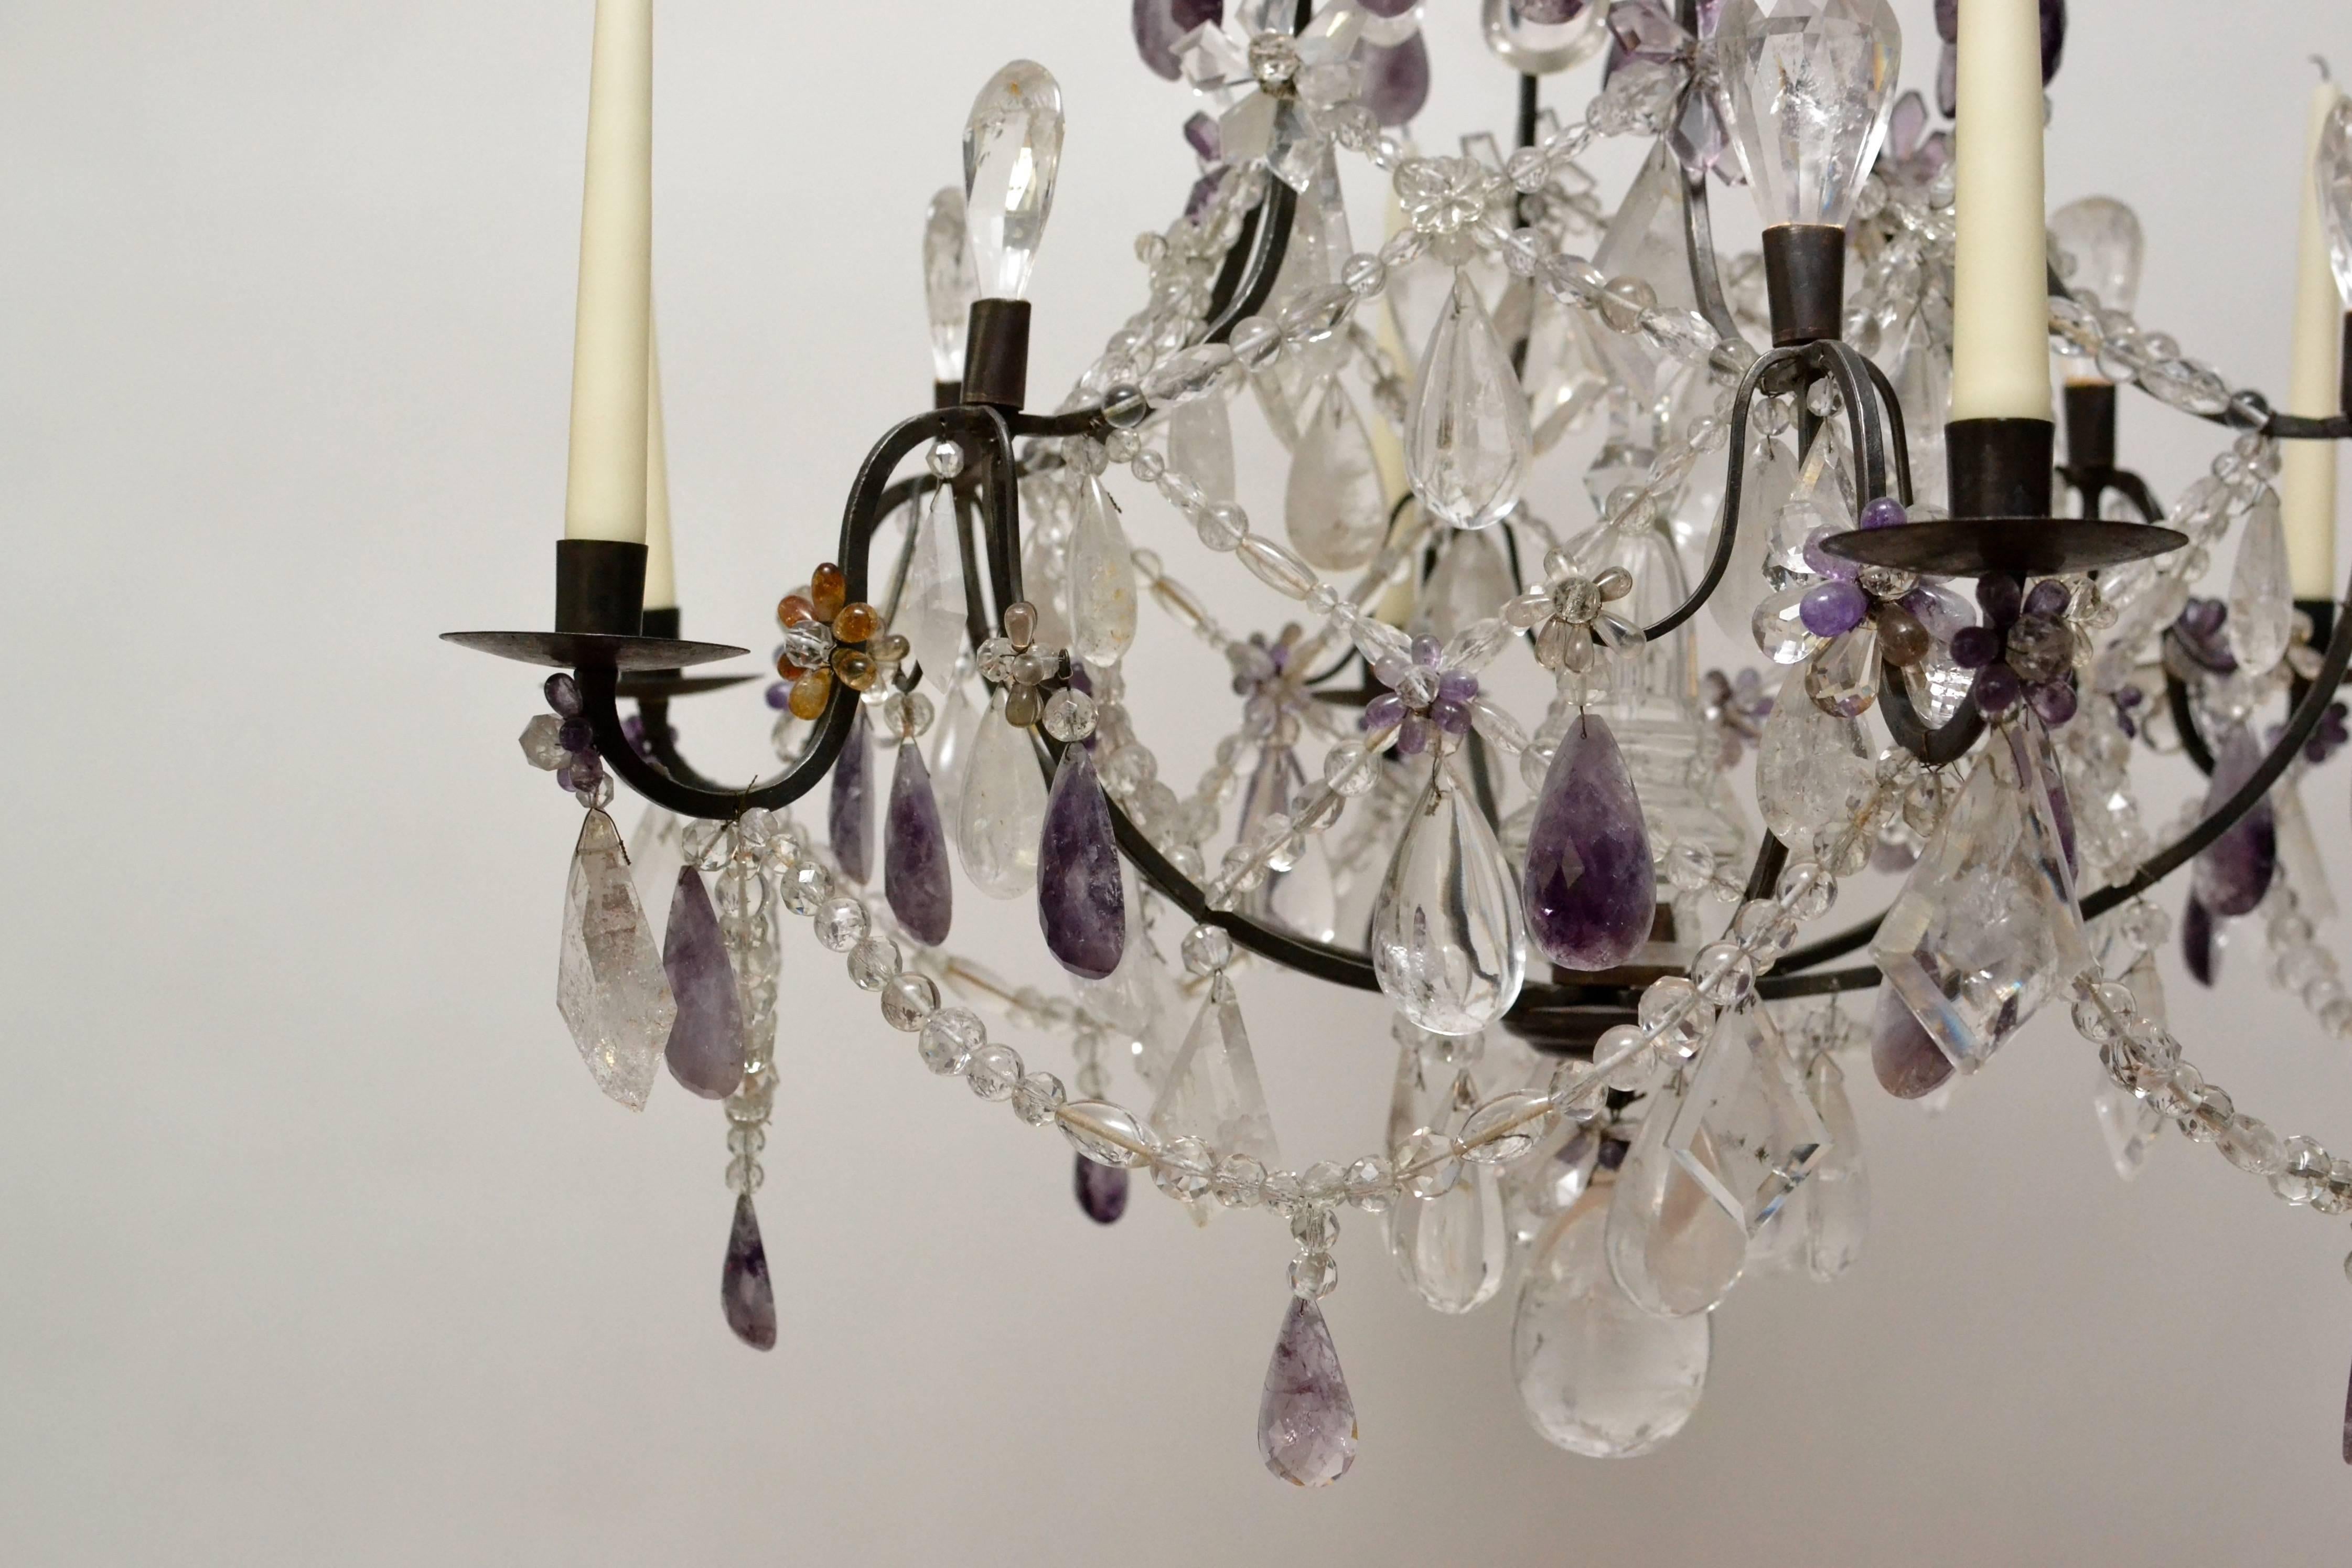 A Rococo rock crystal chandelier, 19th century.